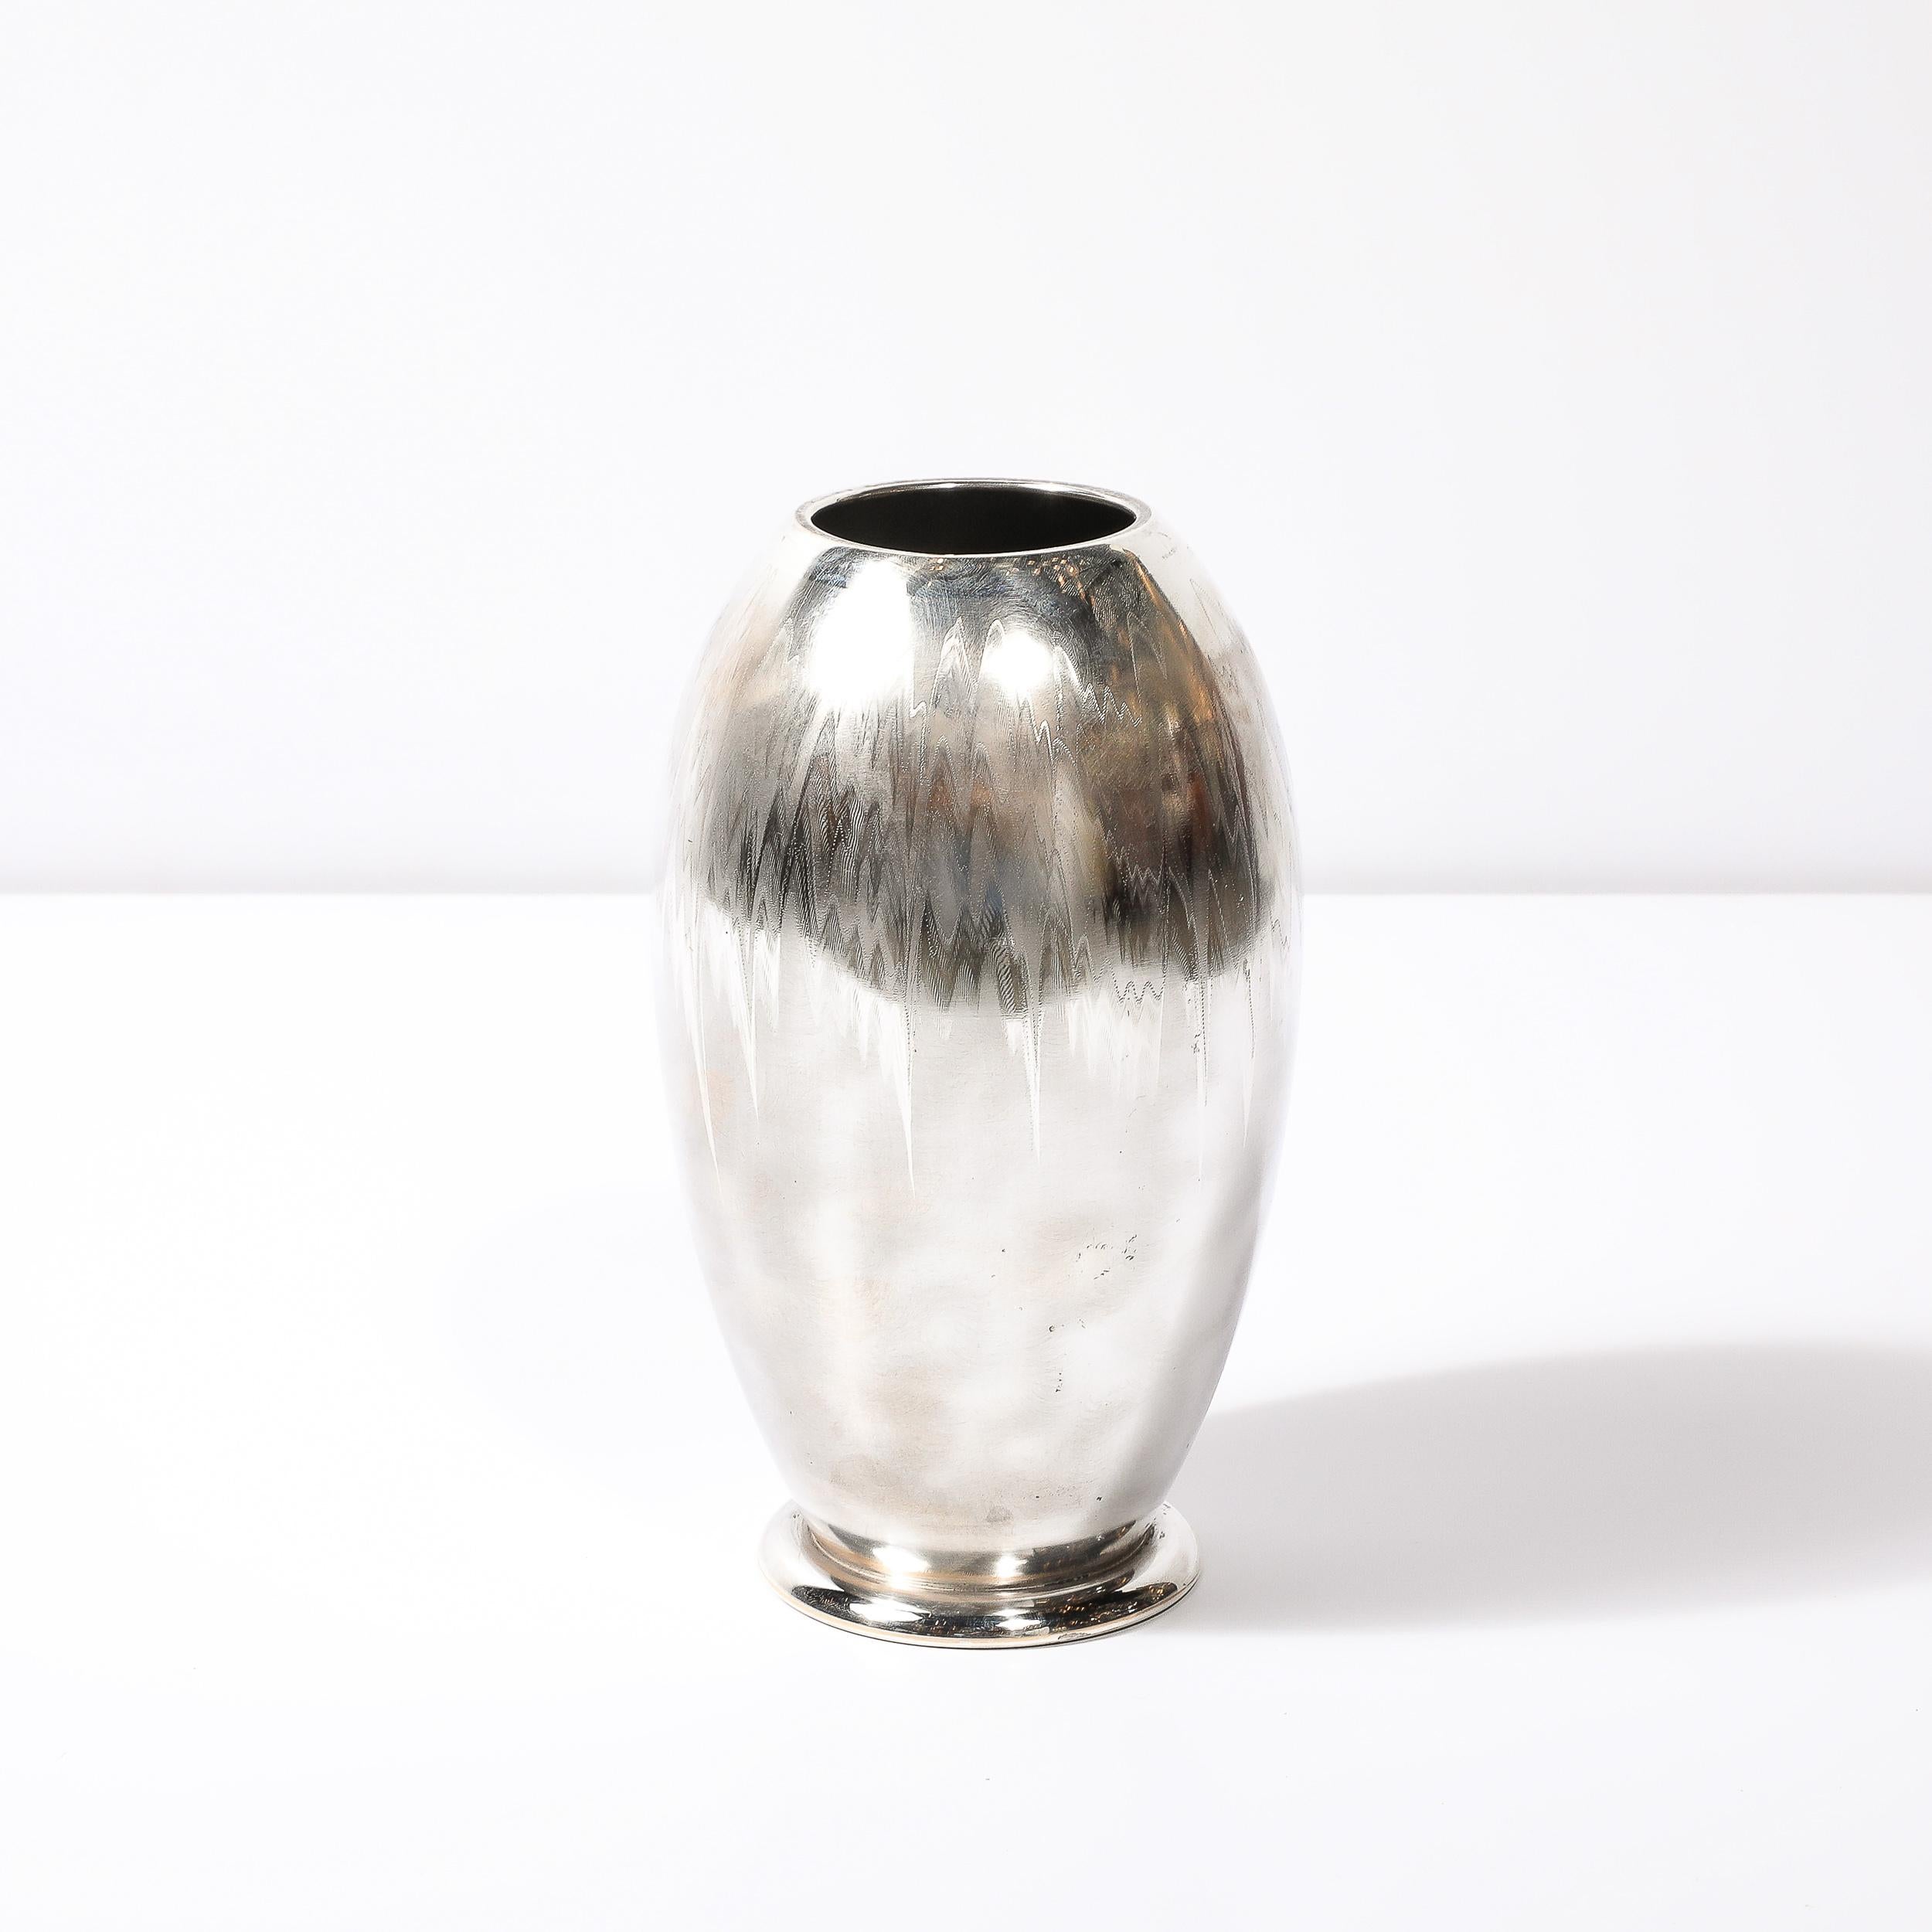 Ce vase Art déco MF Ikora Textural Silver Plated, serein et matériellement étonnant, provient d'Allemagne vers 1935. La surface arrondie est ornée d'une belle texture de matériau argenté strié, avec un élément effilé avant de s'étendre jusqu'à sa